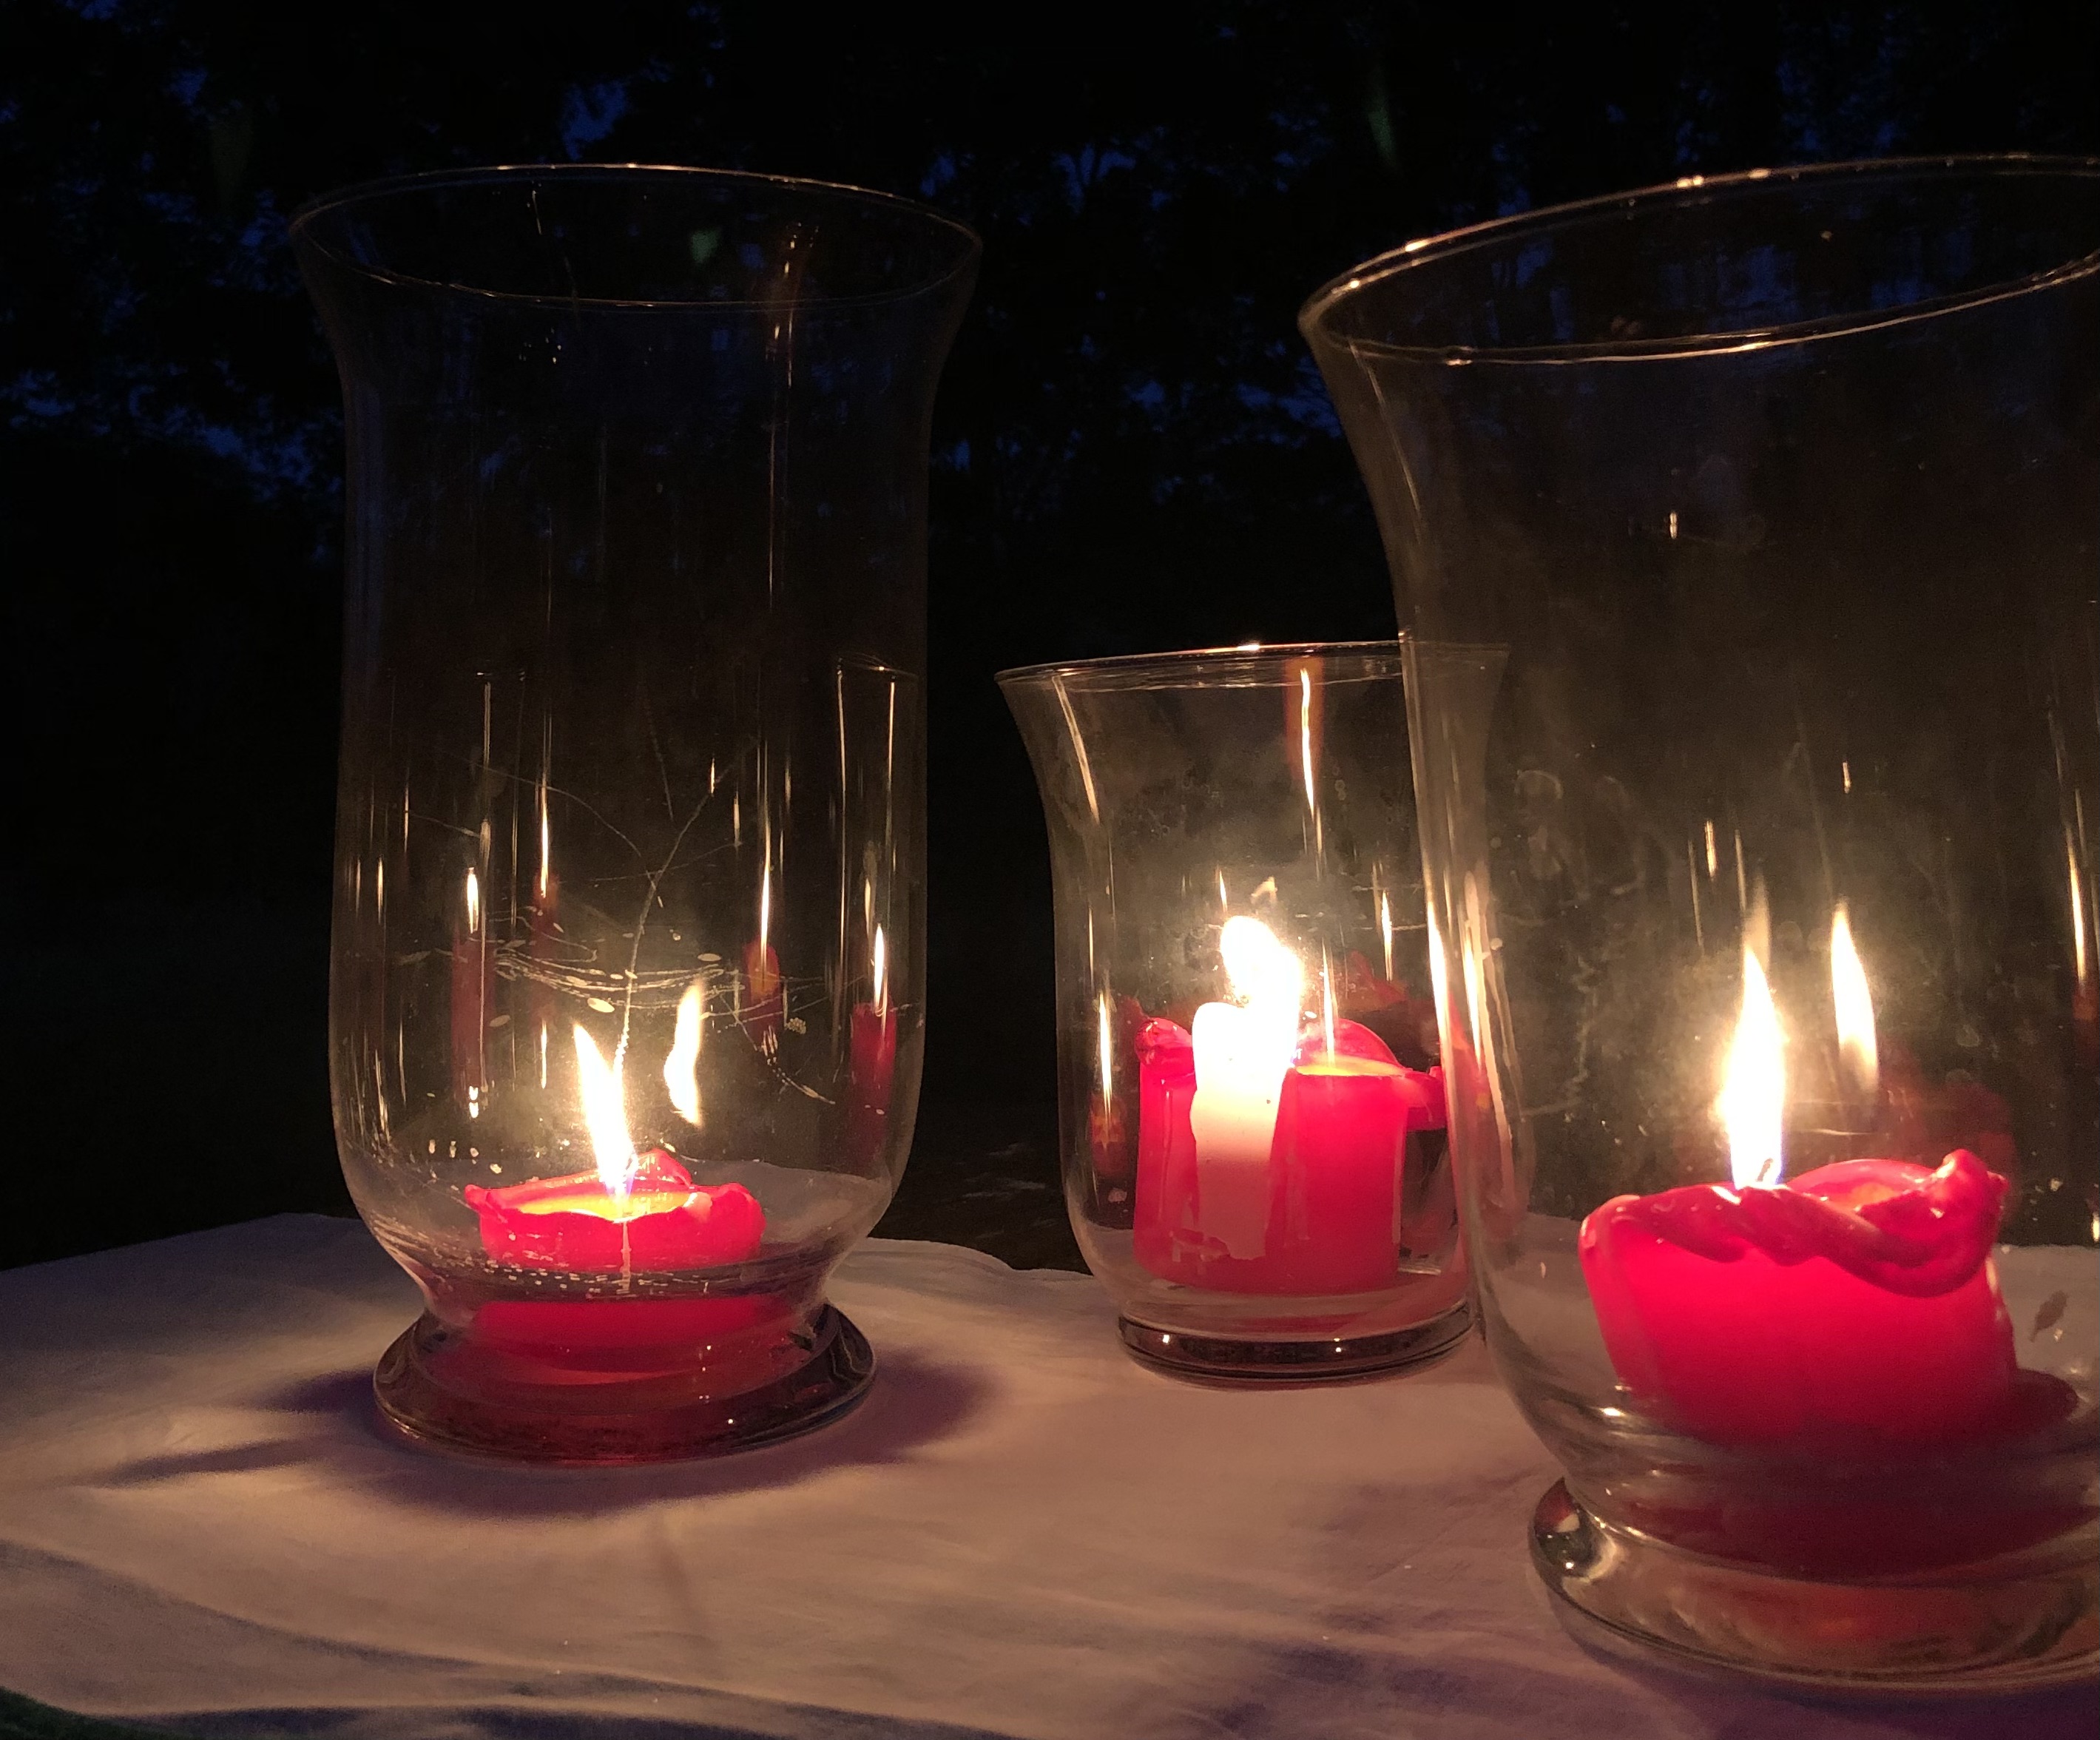 Kolme kynttilää palaa tunnelmallisesti lasilyhdyissään.